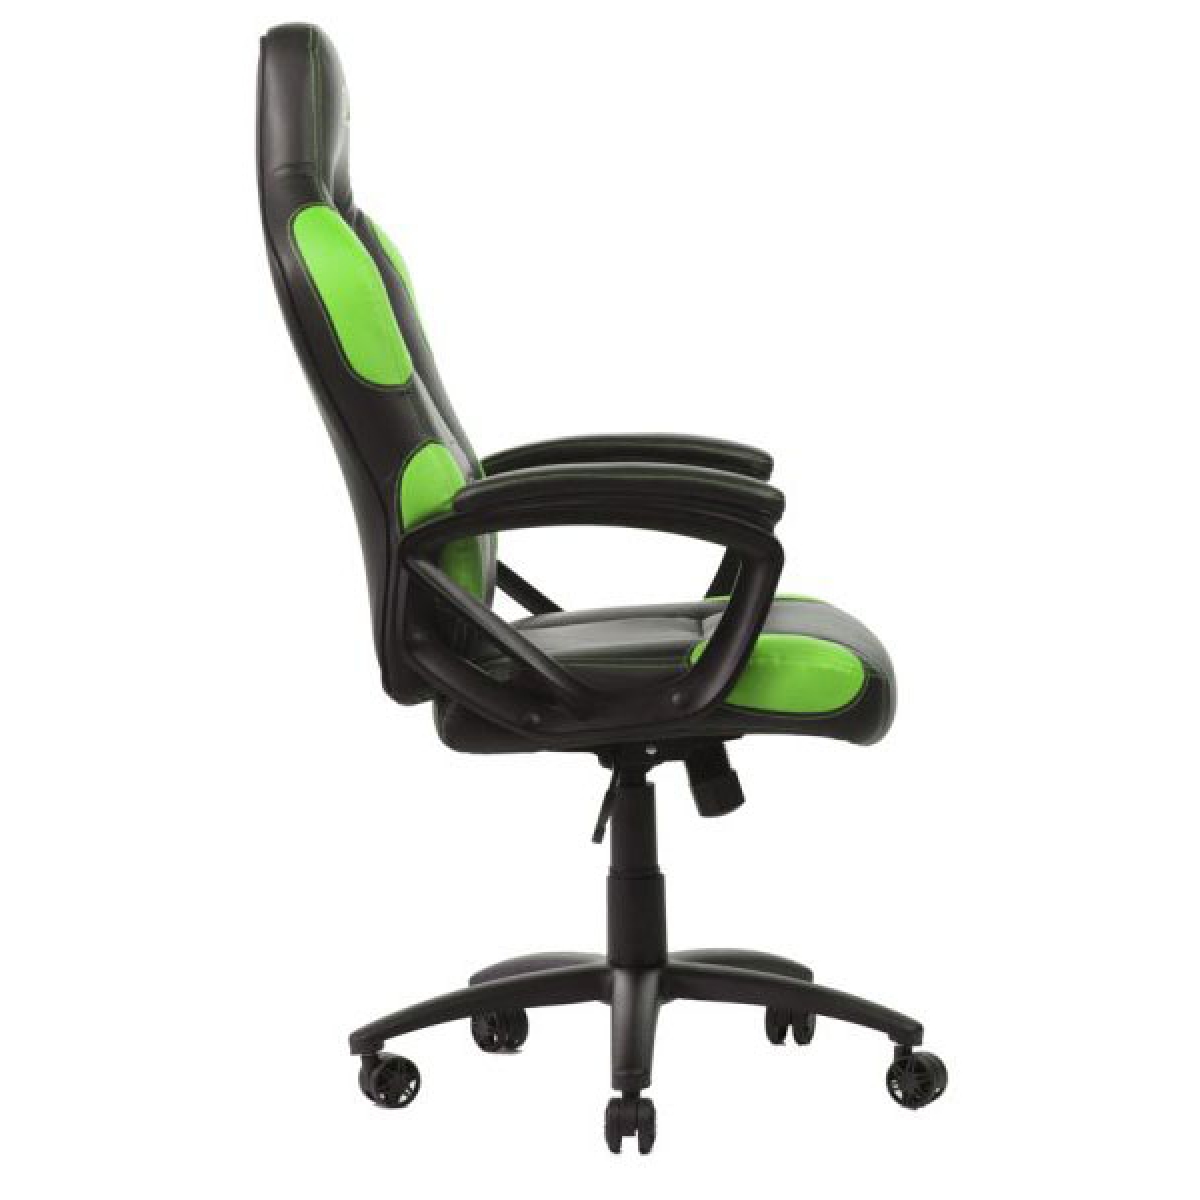 Cadeira Gamer DT3Sports GTX, Green